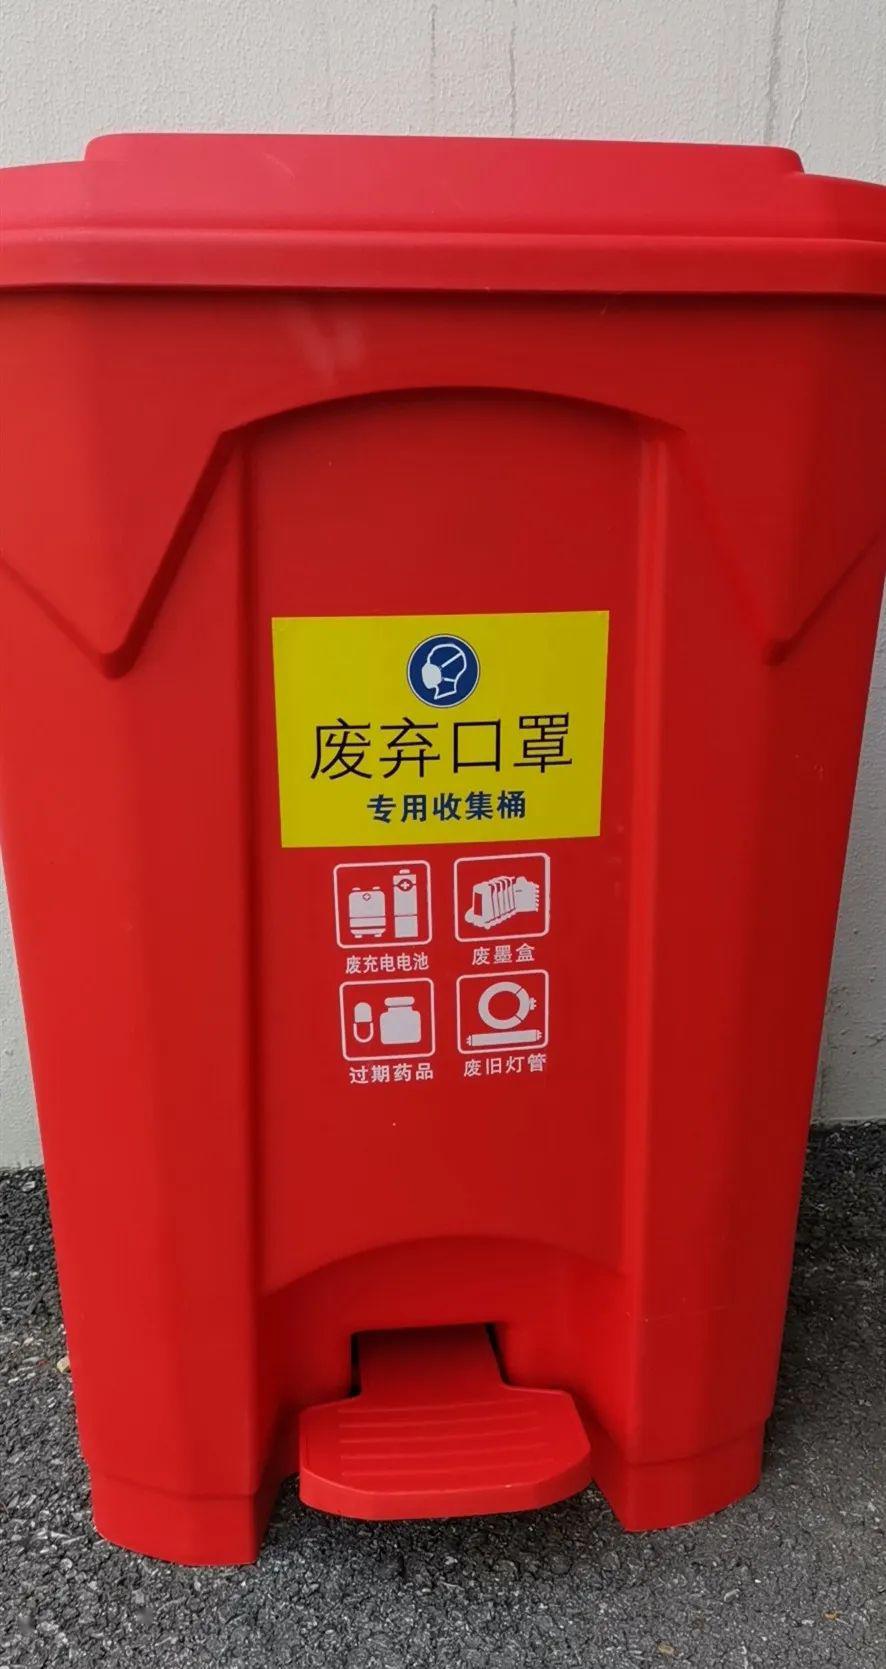 校园角落 疫情期间,请大家记住红色,黄色垃圾桶.